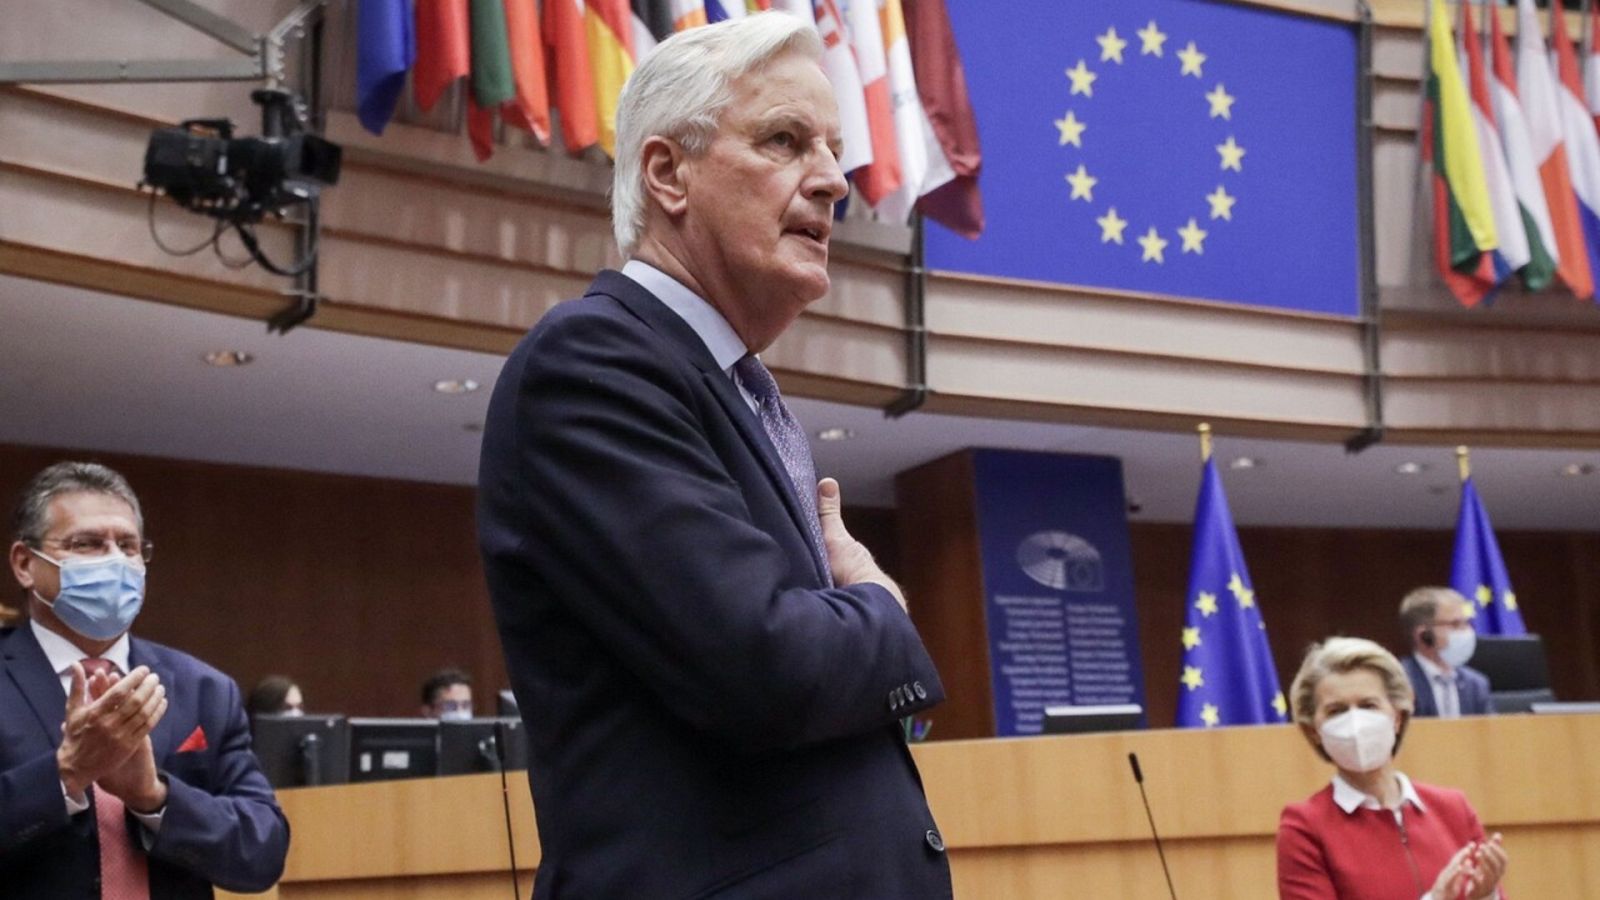 Michel Barnier, jefe negociador de la UE para el acuerdo del Brexit, agradece el apoyo después de que el Europarlamento haya aprobado el acuerdo con el Reino Unido. Foto: OLIVIER HOSLET / POOL / AFP